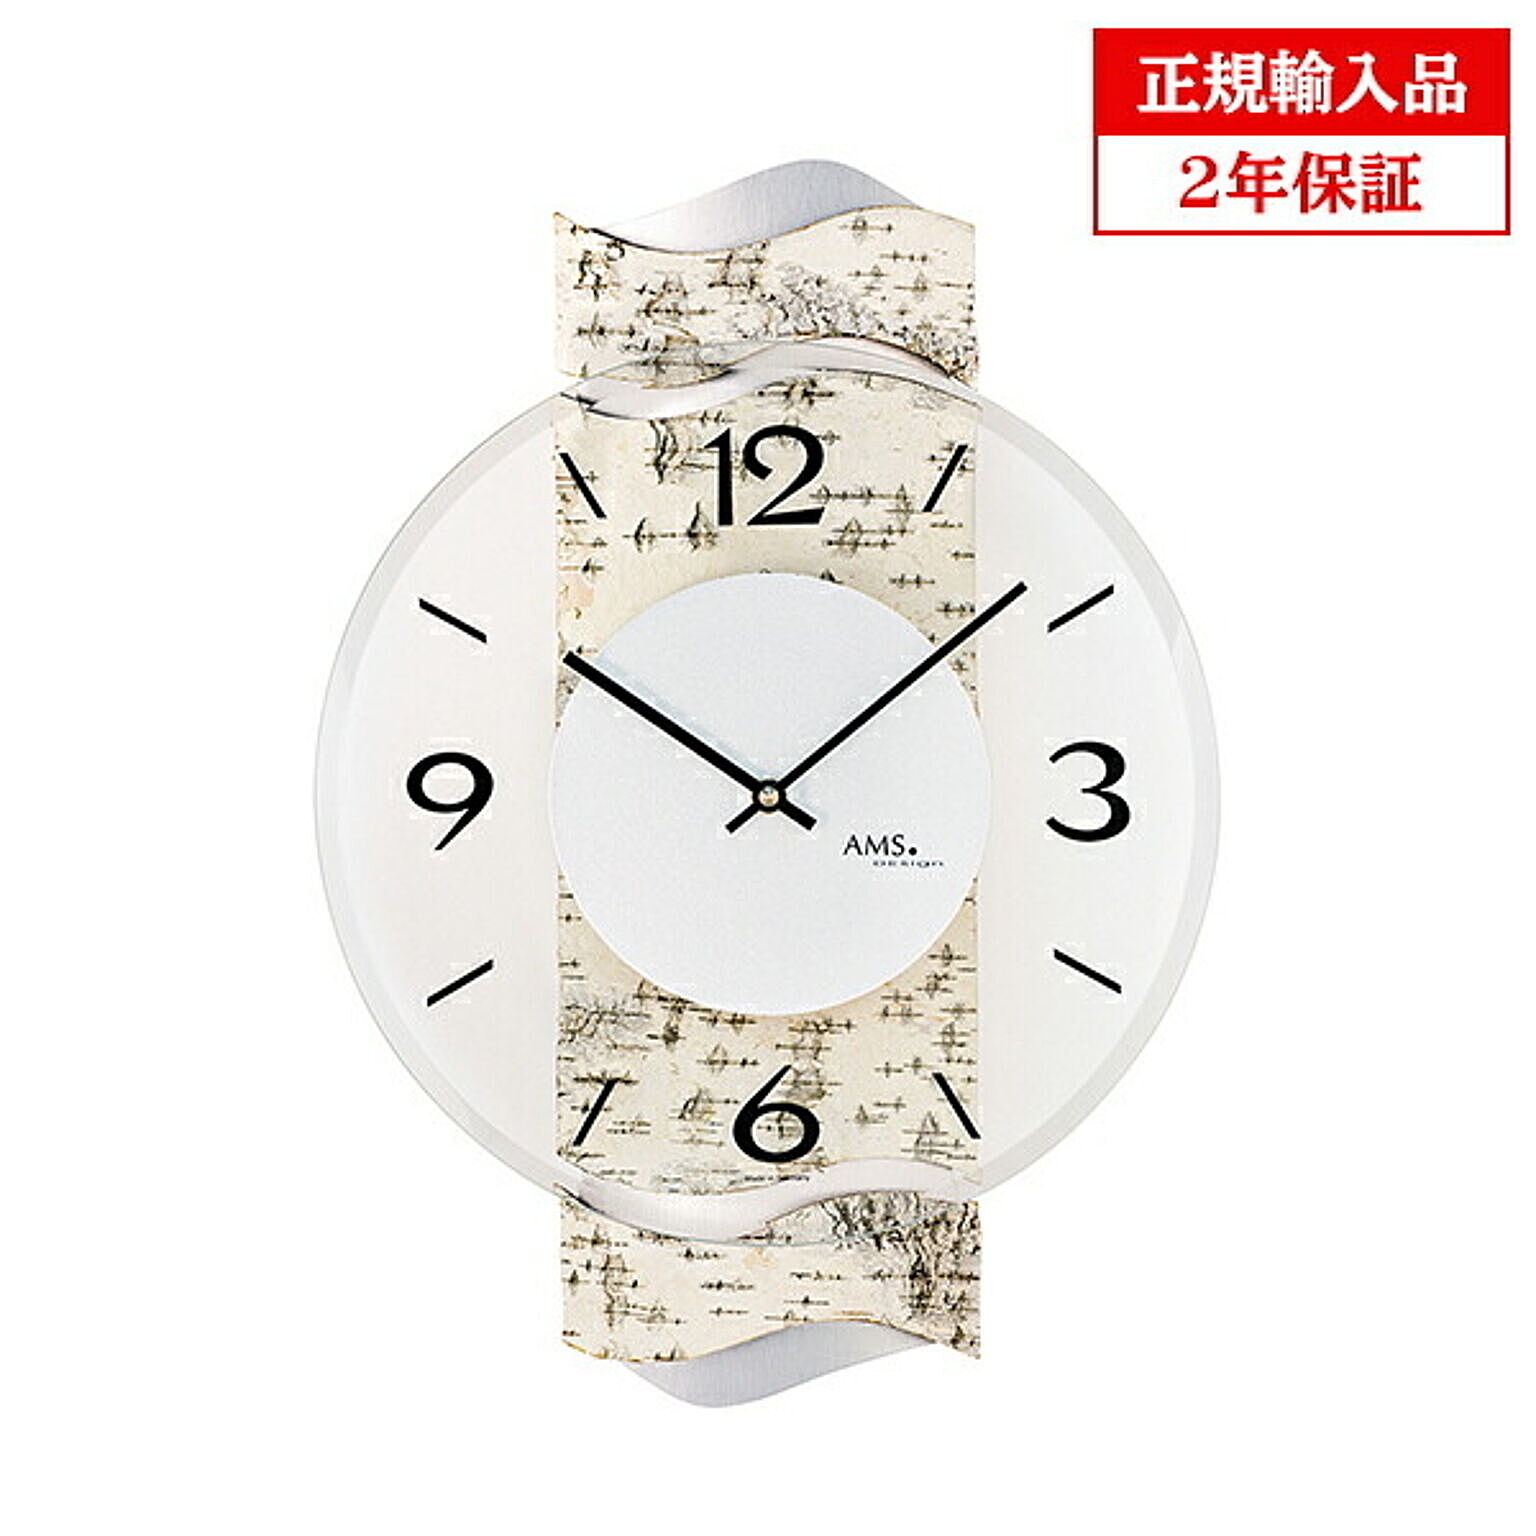 アームス社 AMS 9624 クオーツ 掛け時計 (掛時計) ドイツ製 【正規輸入品】【メーカー保証2年】